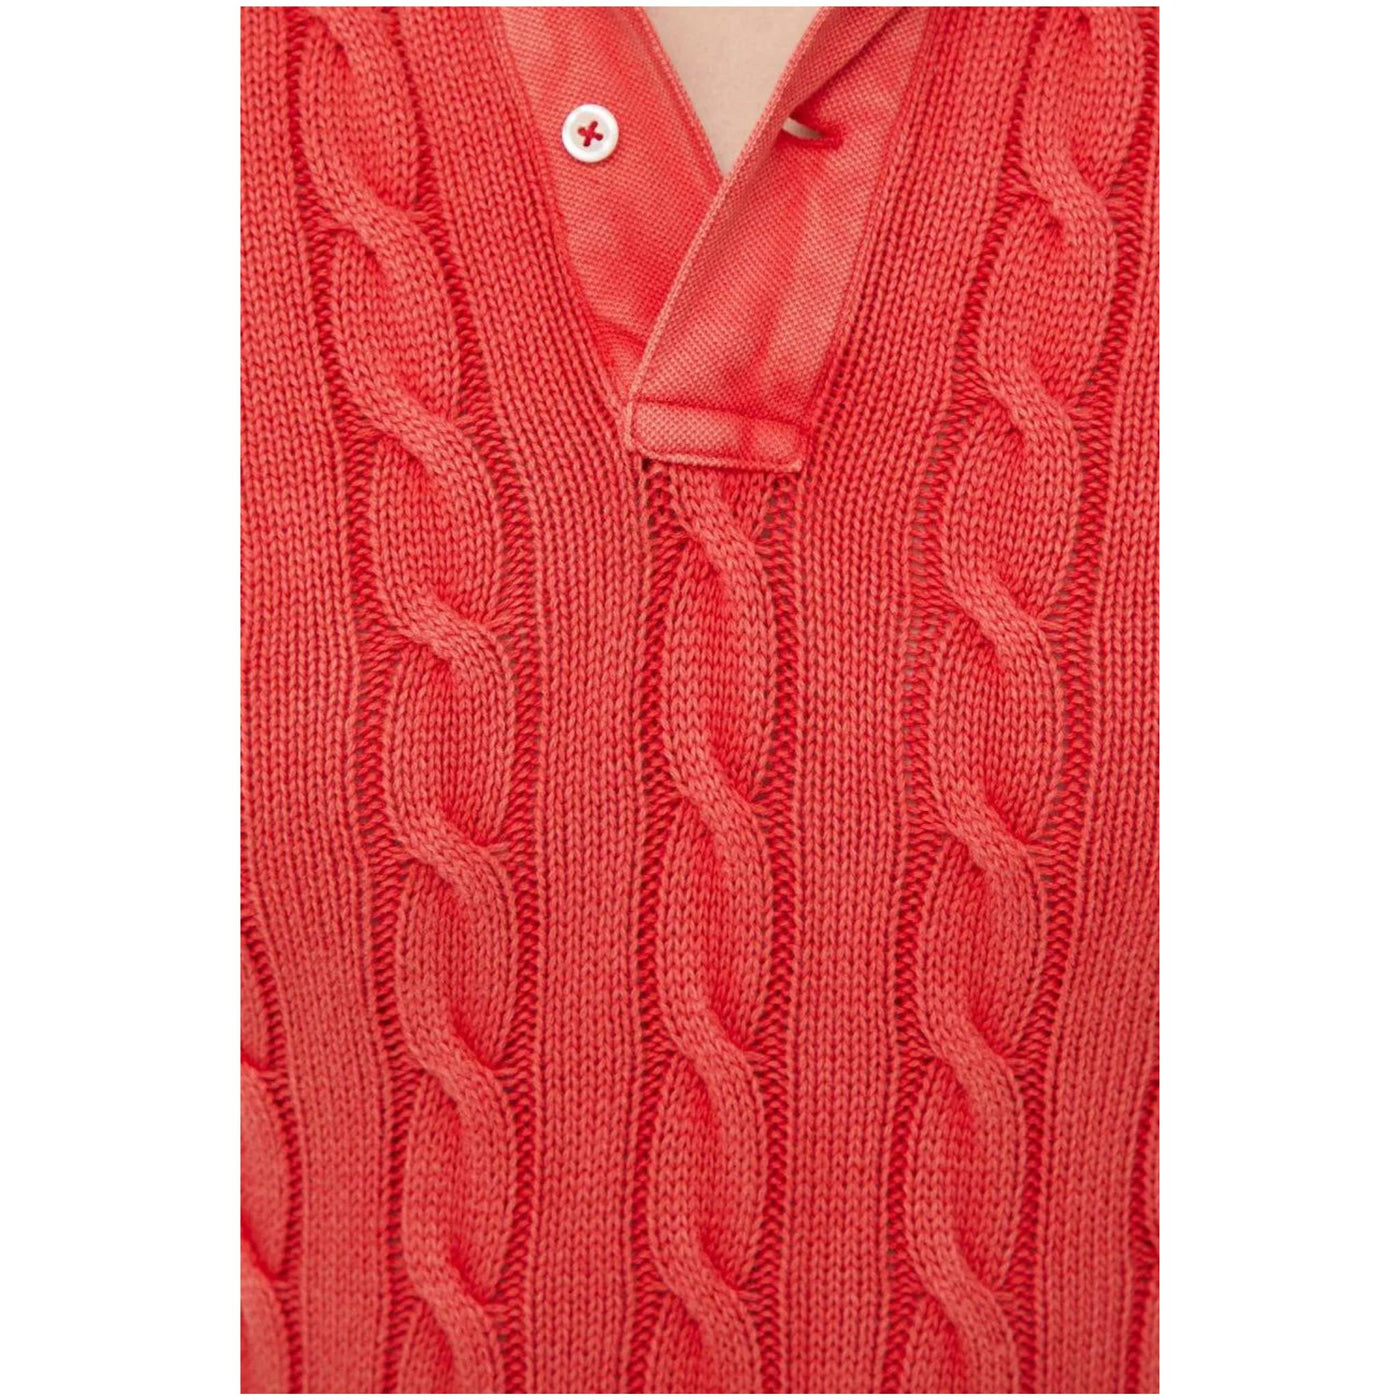 Women's Polo Shirt in Woven Knit